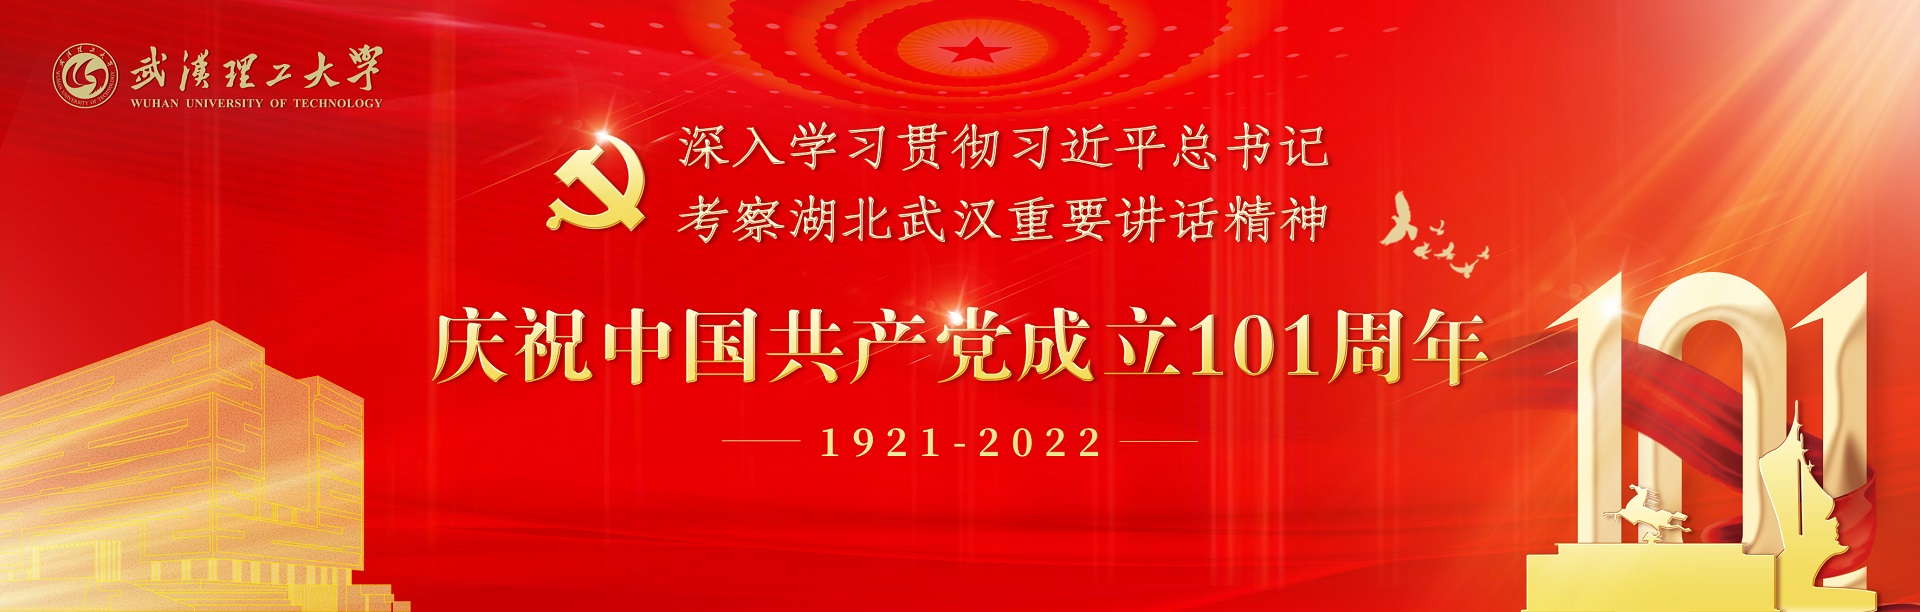 庆祝中国共产党员成立101周年